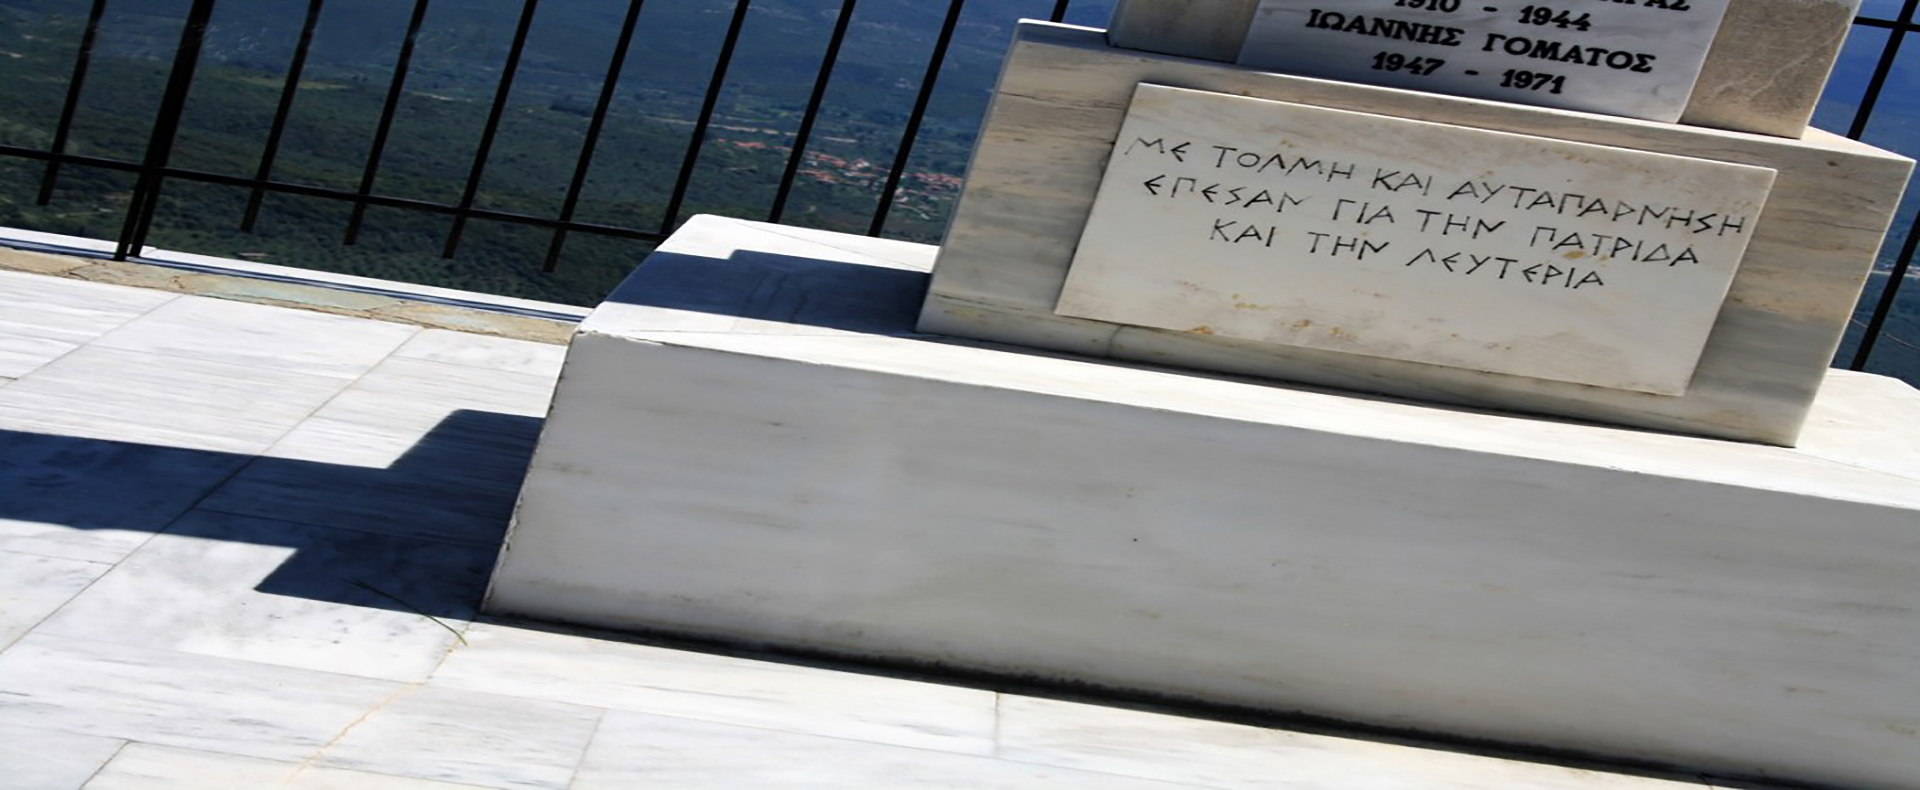 Το Μνημείο των Πεσόντων Αεροπόρων στο Γεωργίτσι Λακωνίας